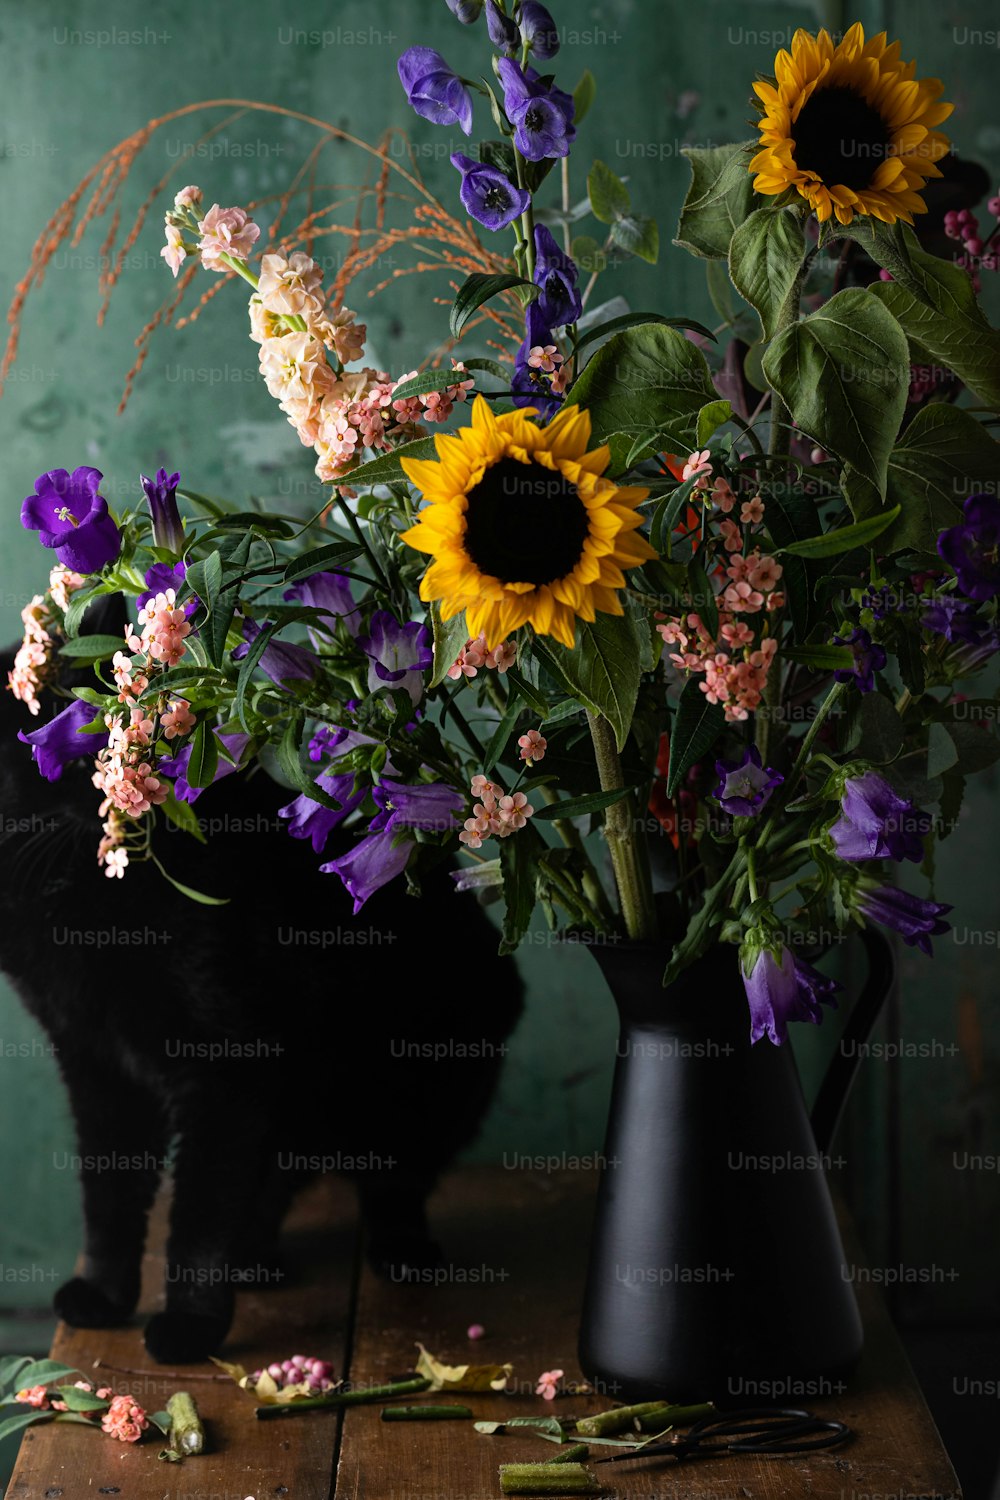 Eine schwarze Katze, die neben einer Vase mit Blumen steht